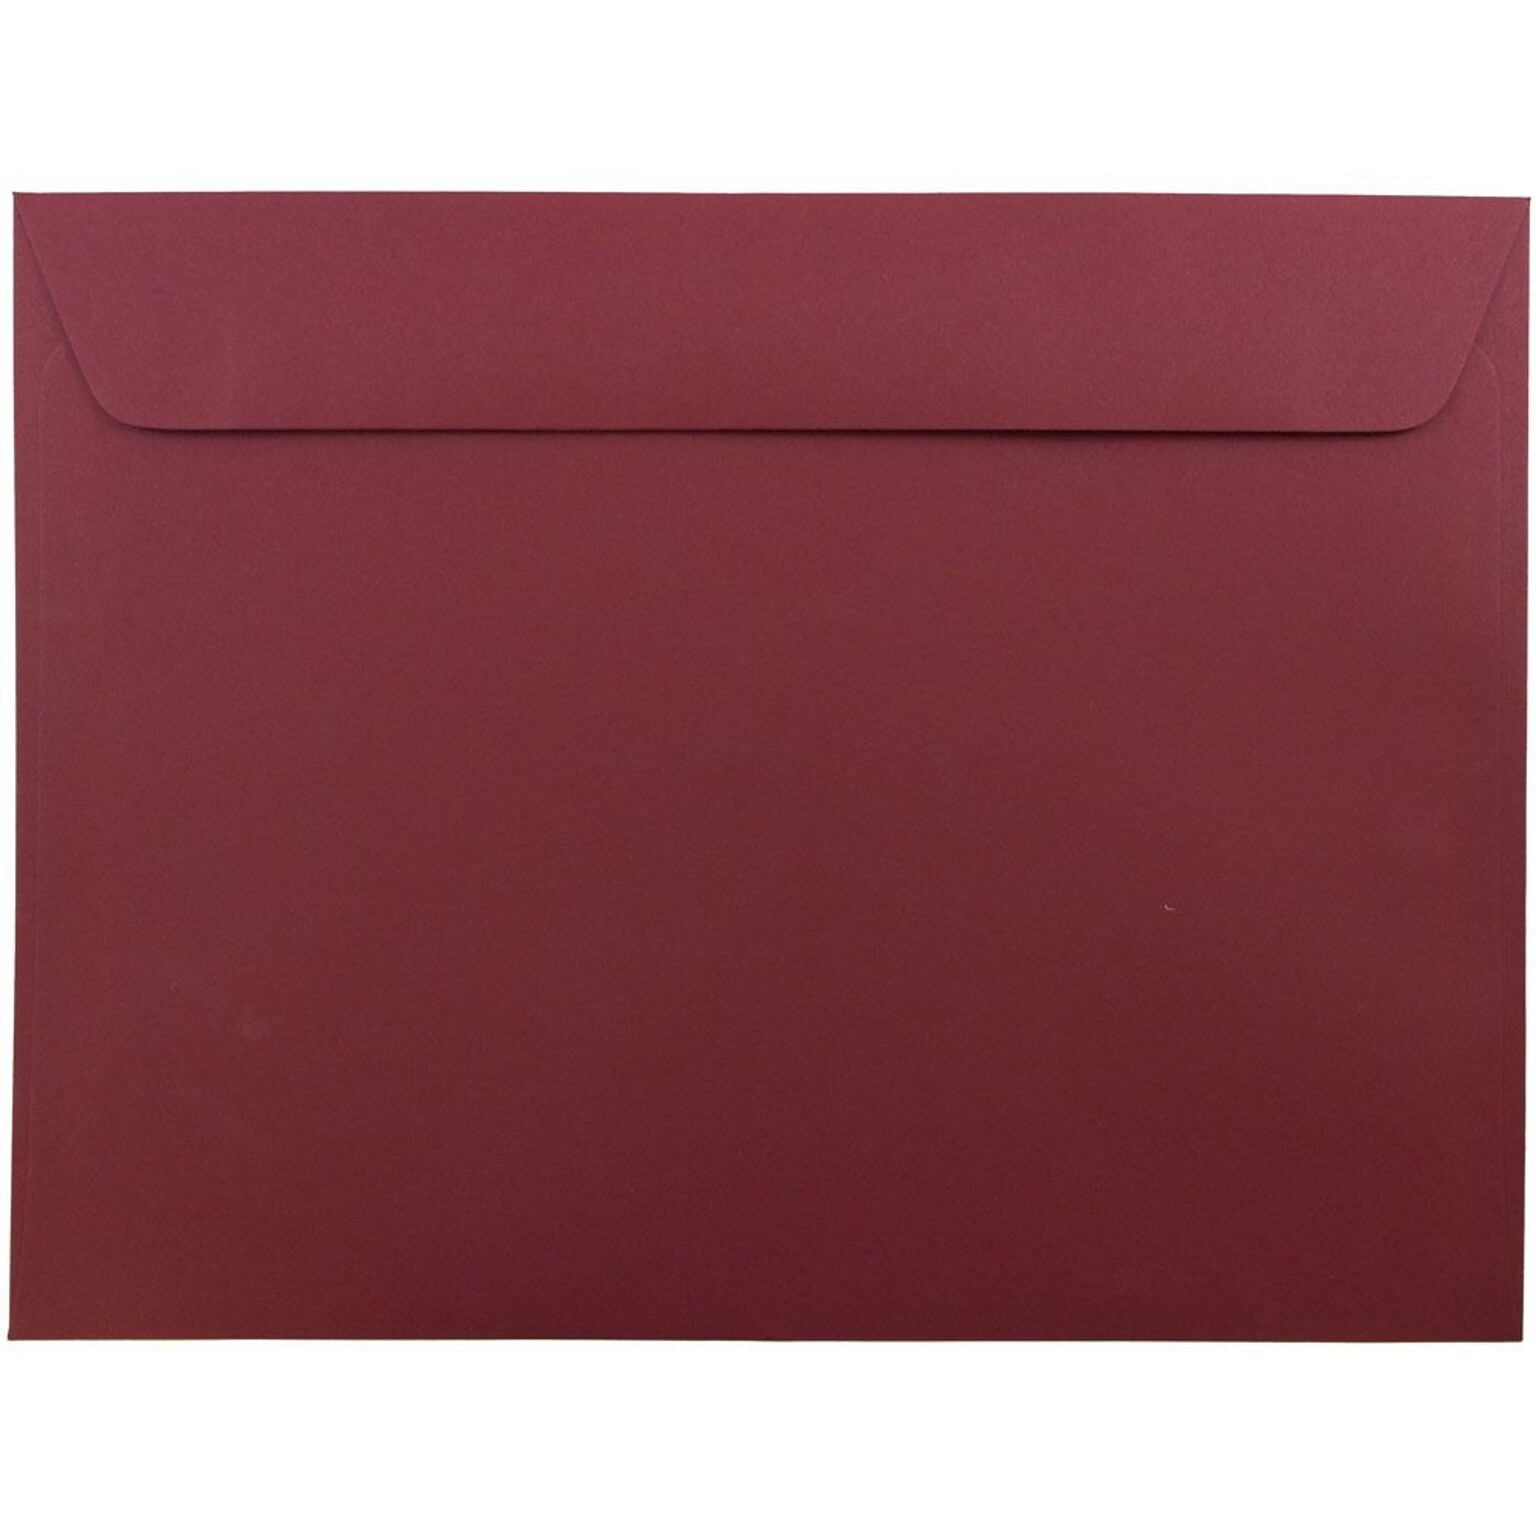 JAM Paper 9 x 12 Booklet Envelopes, Dark Red, 50/Pack (31511309i)